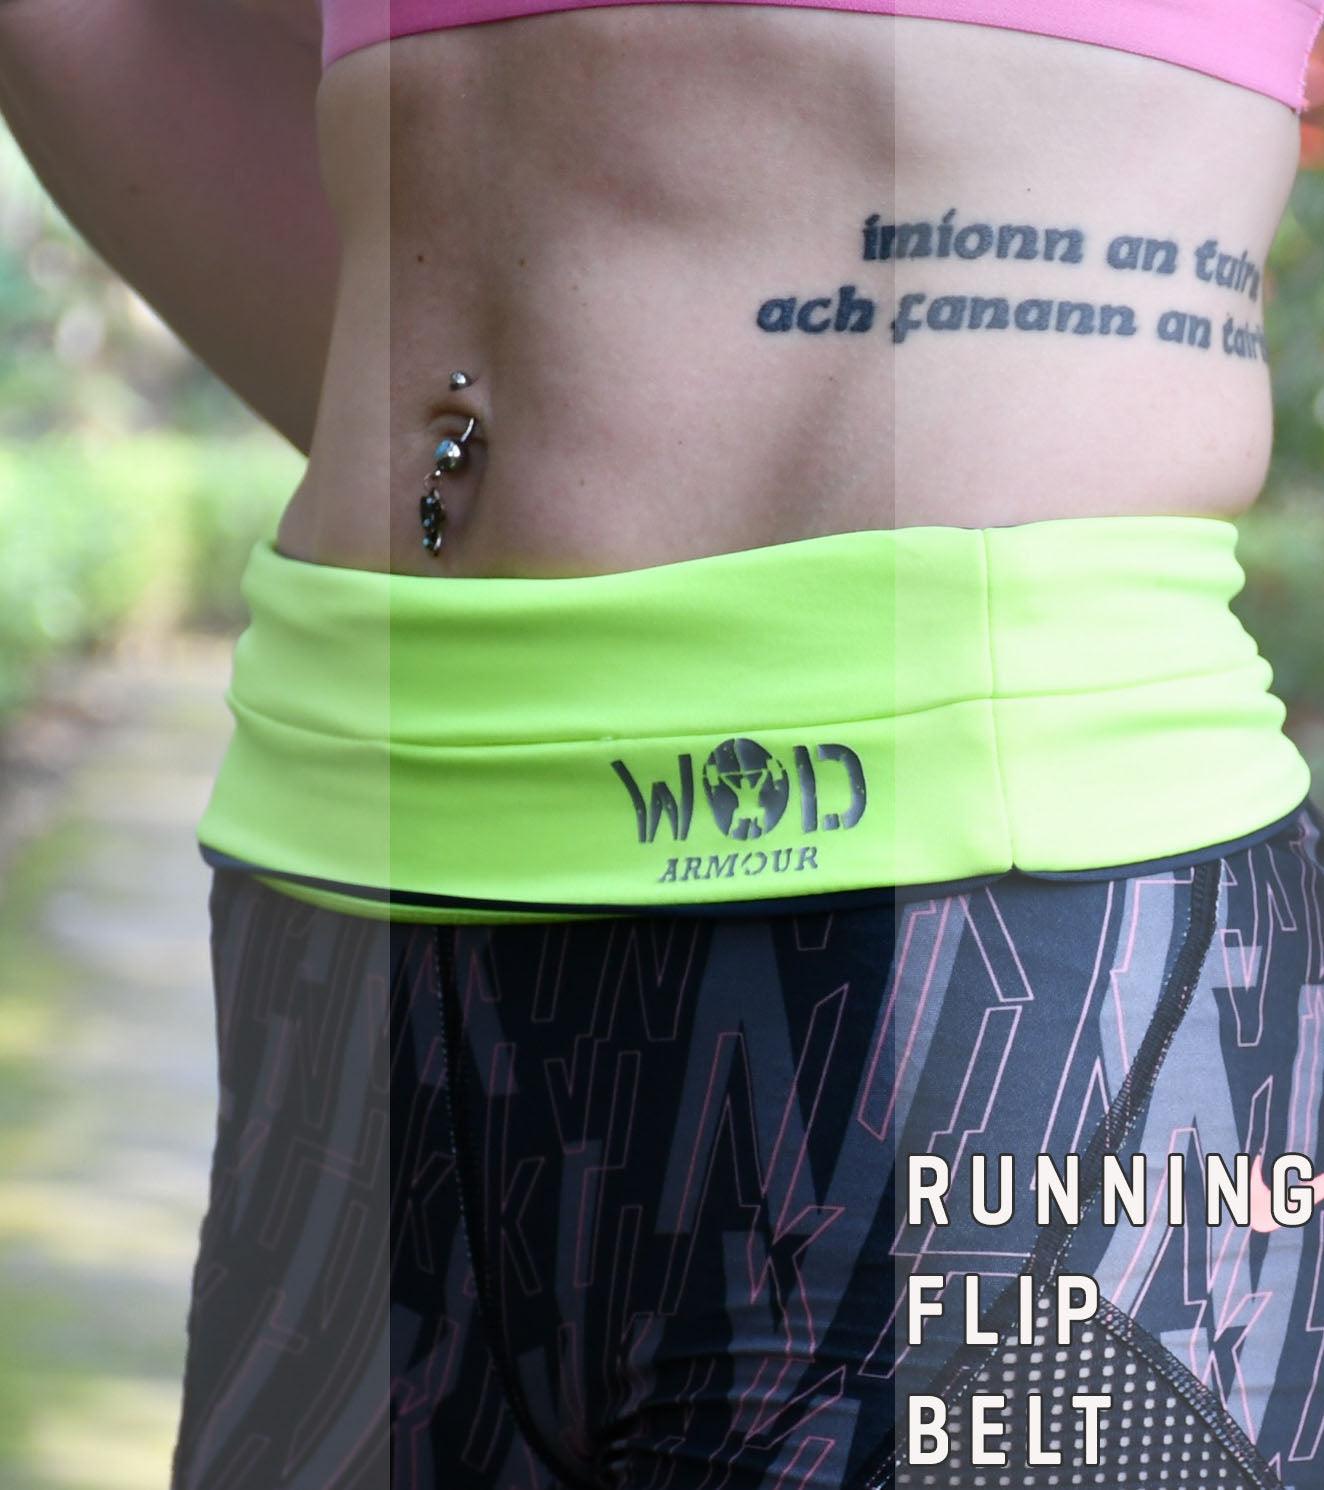 Running/Travelling waist belt - wodarmour